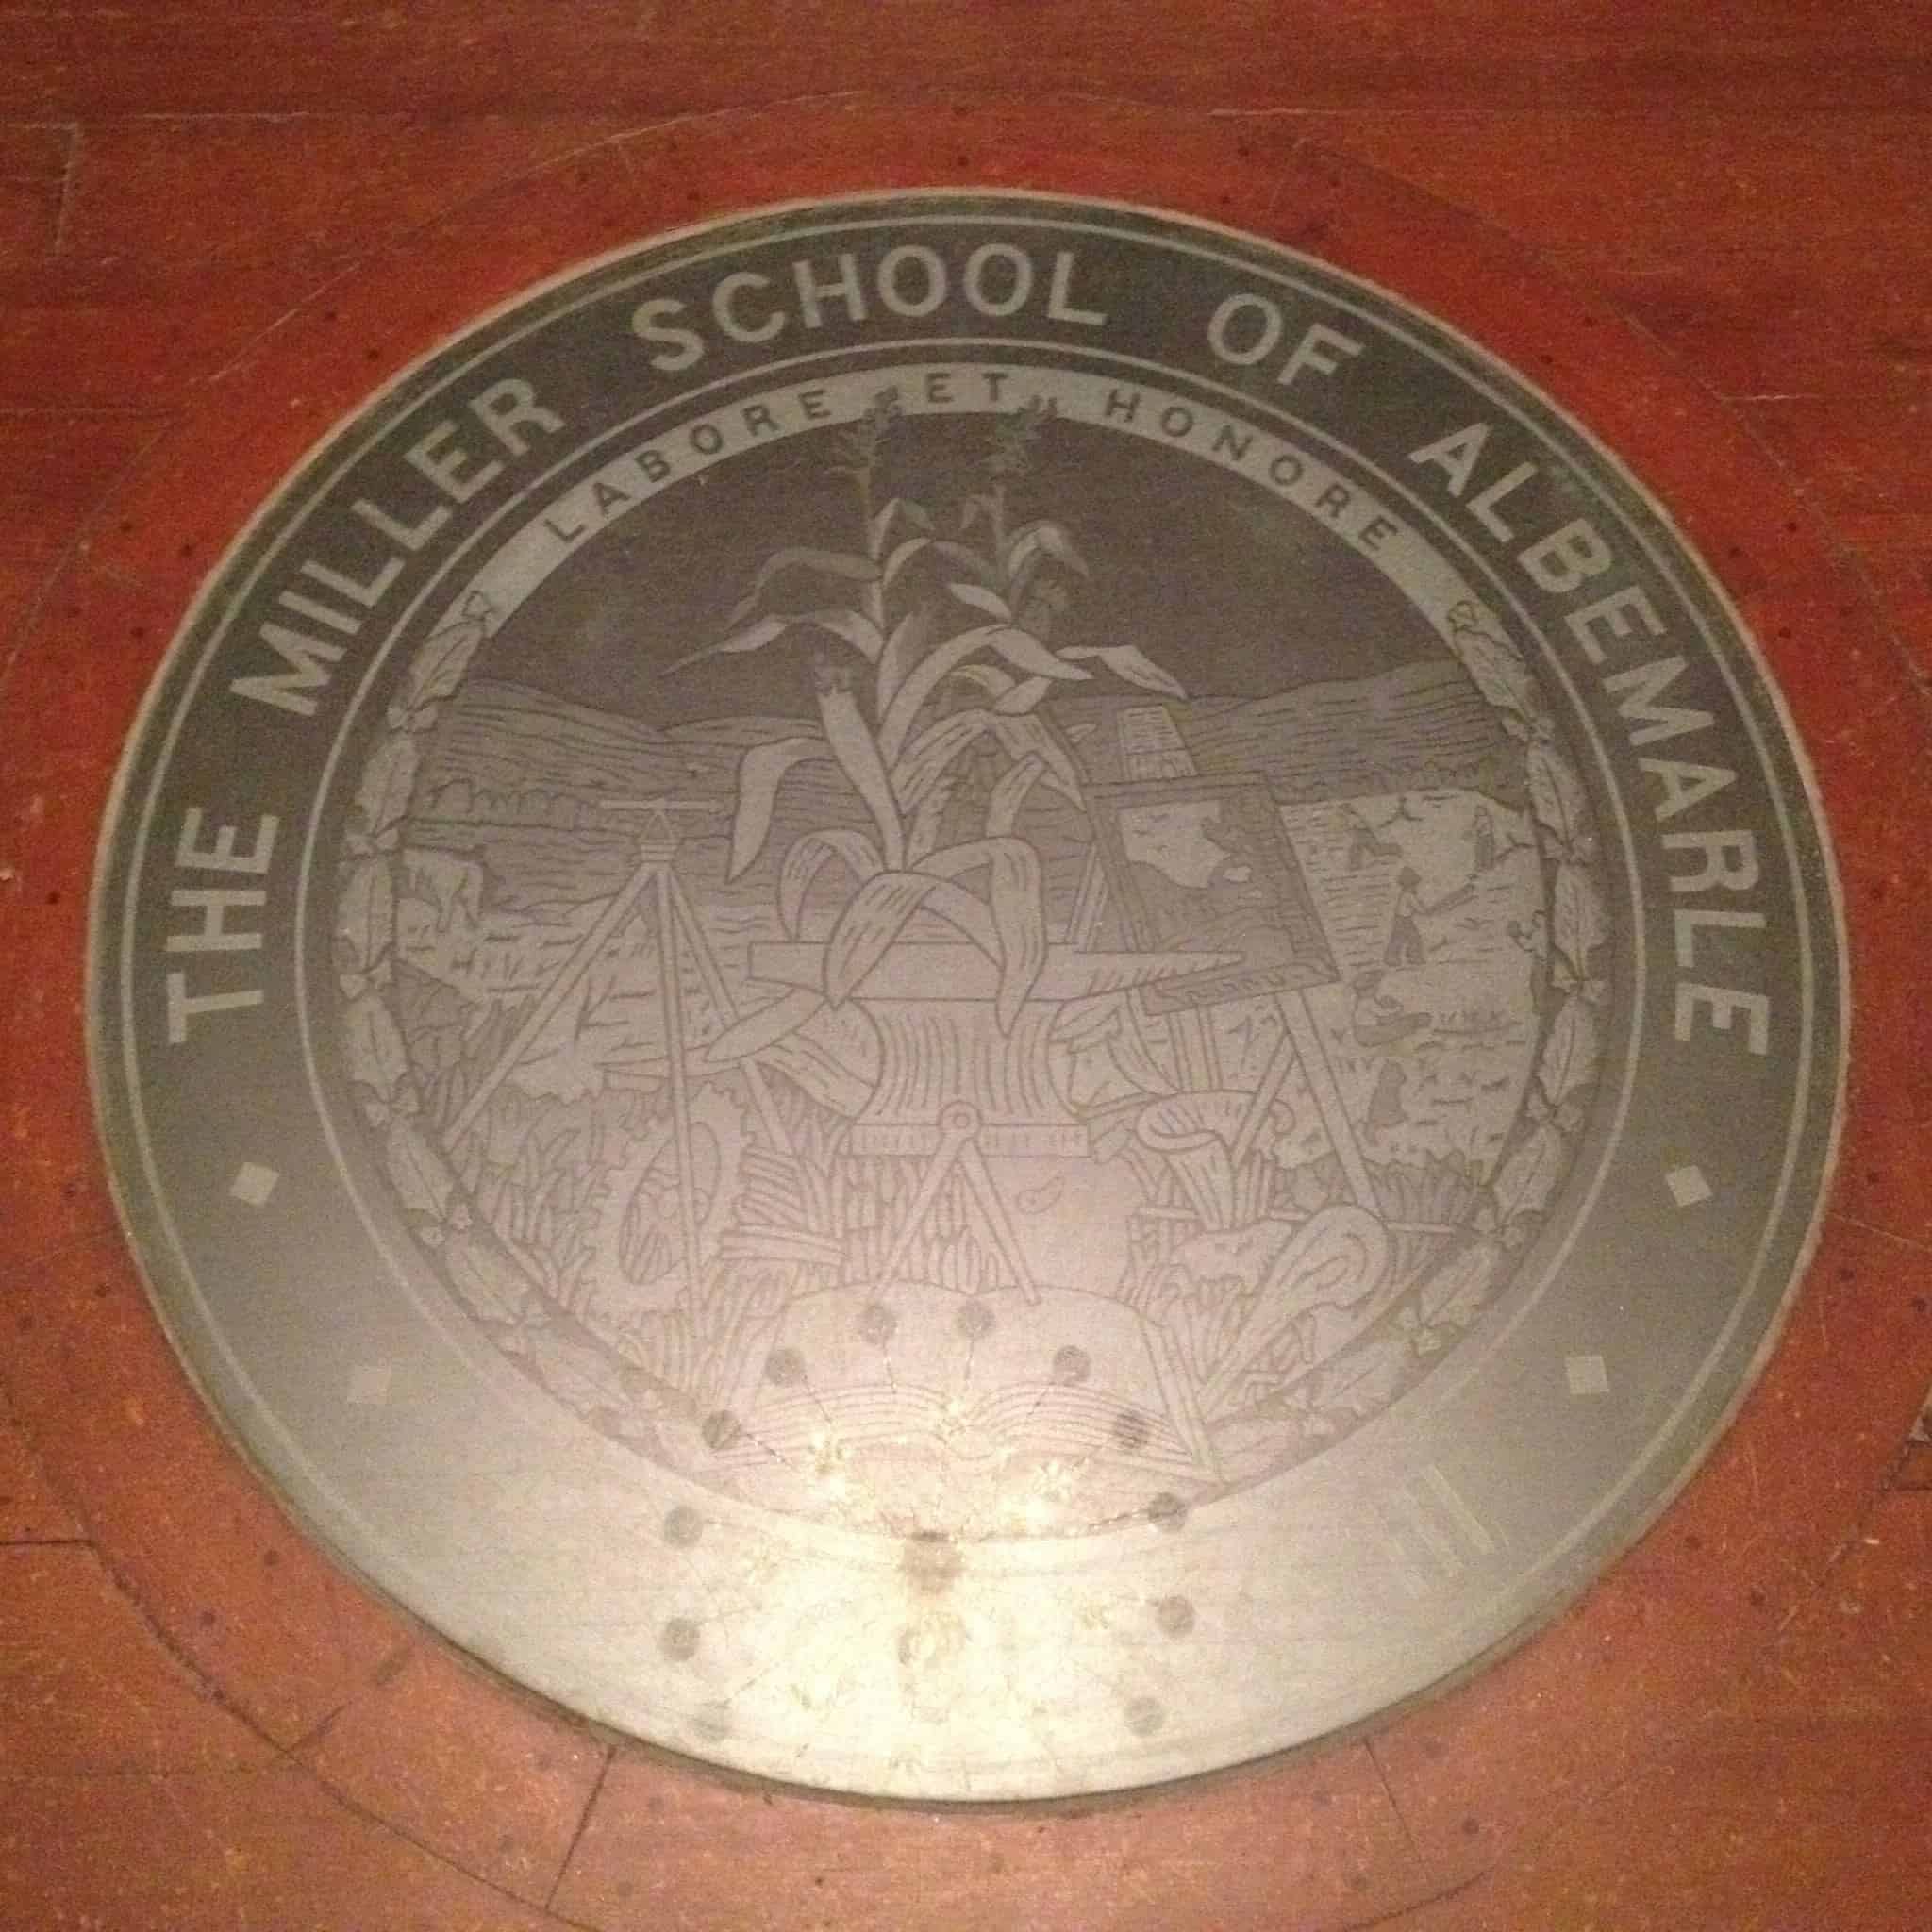 The Miller School of Albemarle